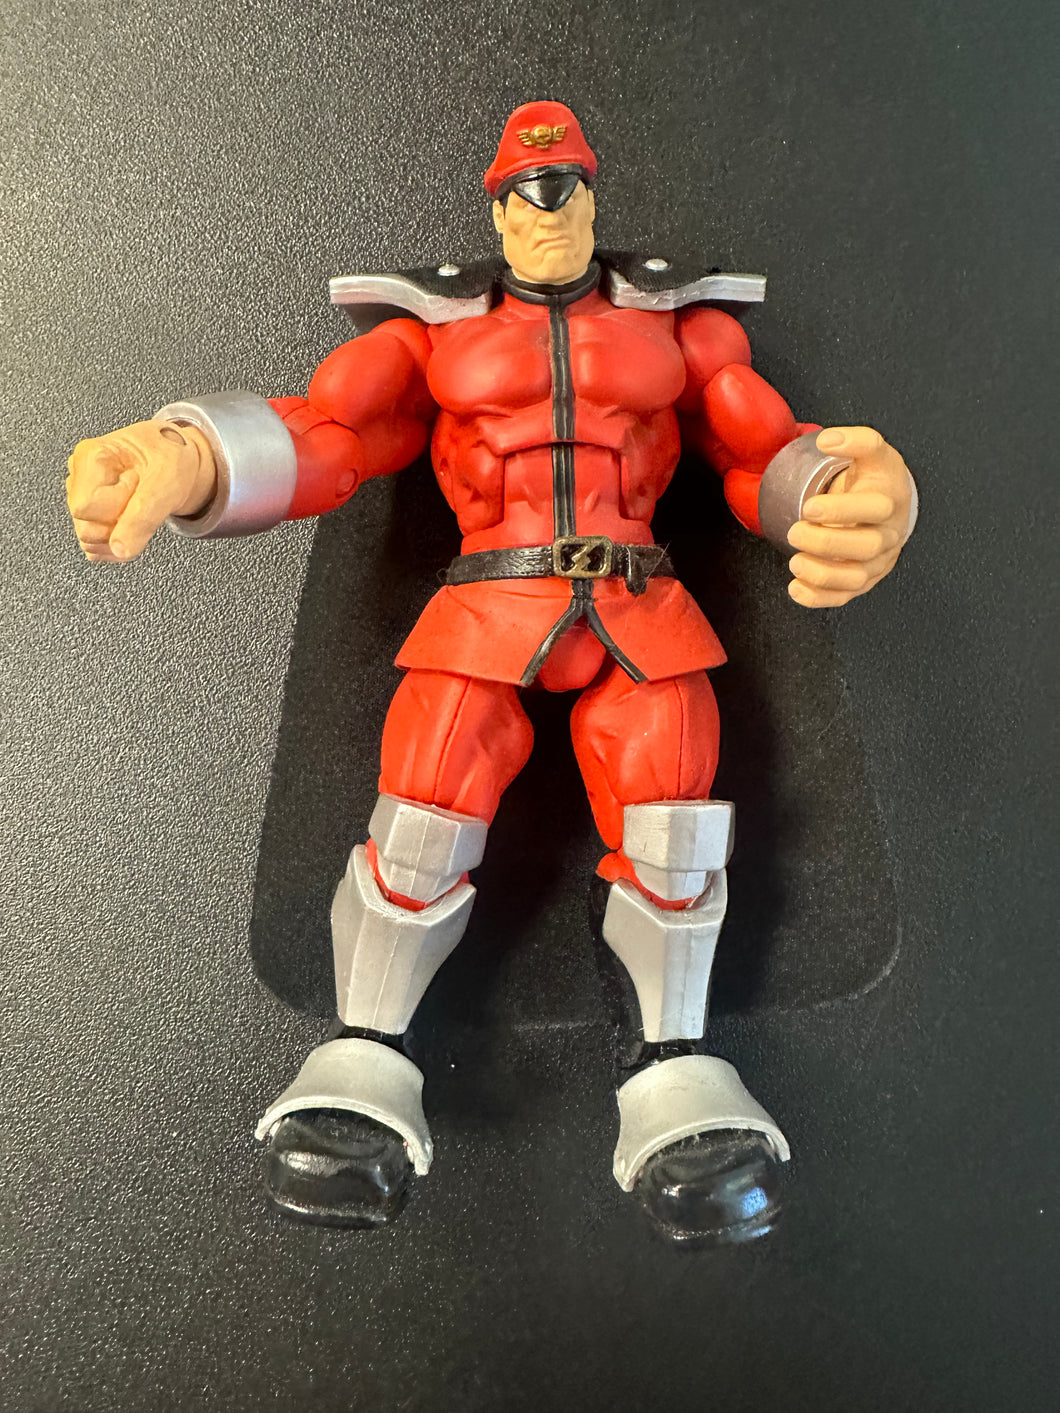 SOTA Toys 2004 Capcom Street Fighter M. BISON Action Figure